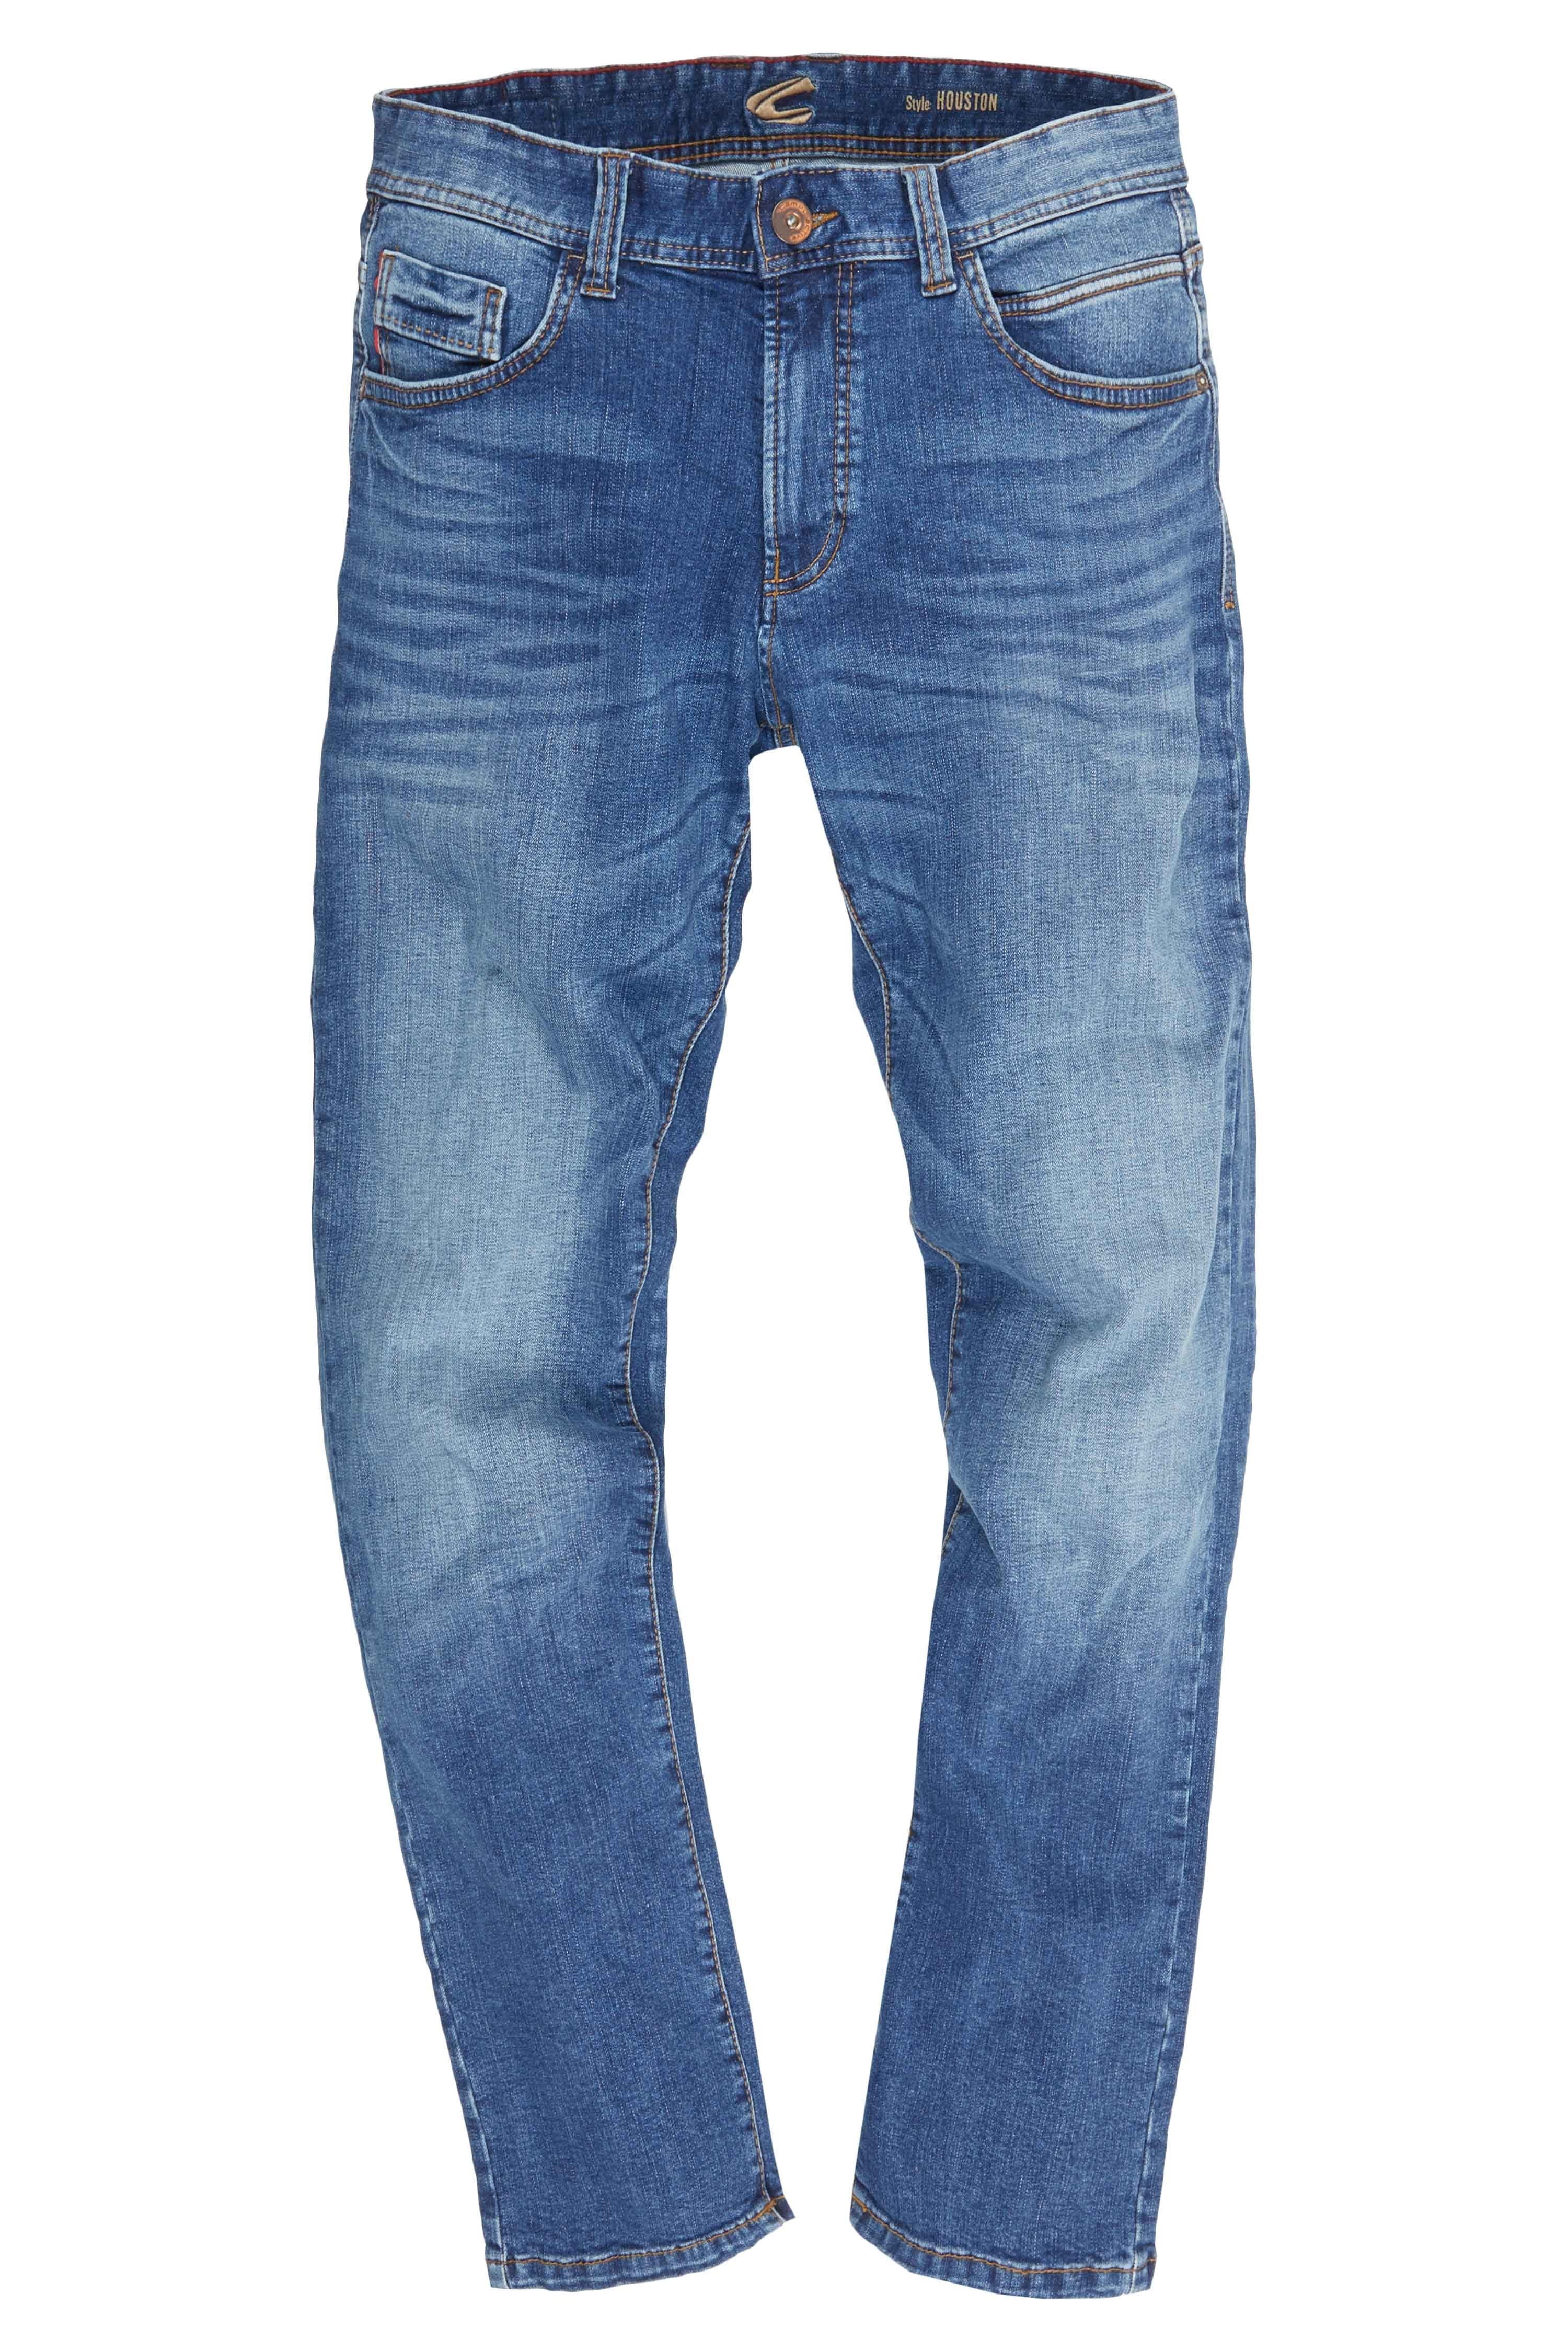 camel active Regular-fit-Jeans 5-POCKET blau HOUSTON